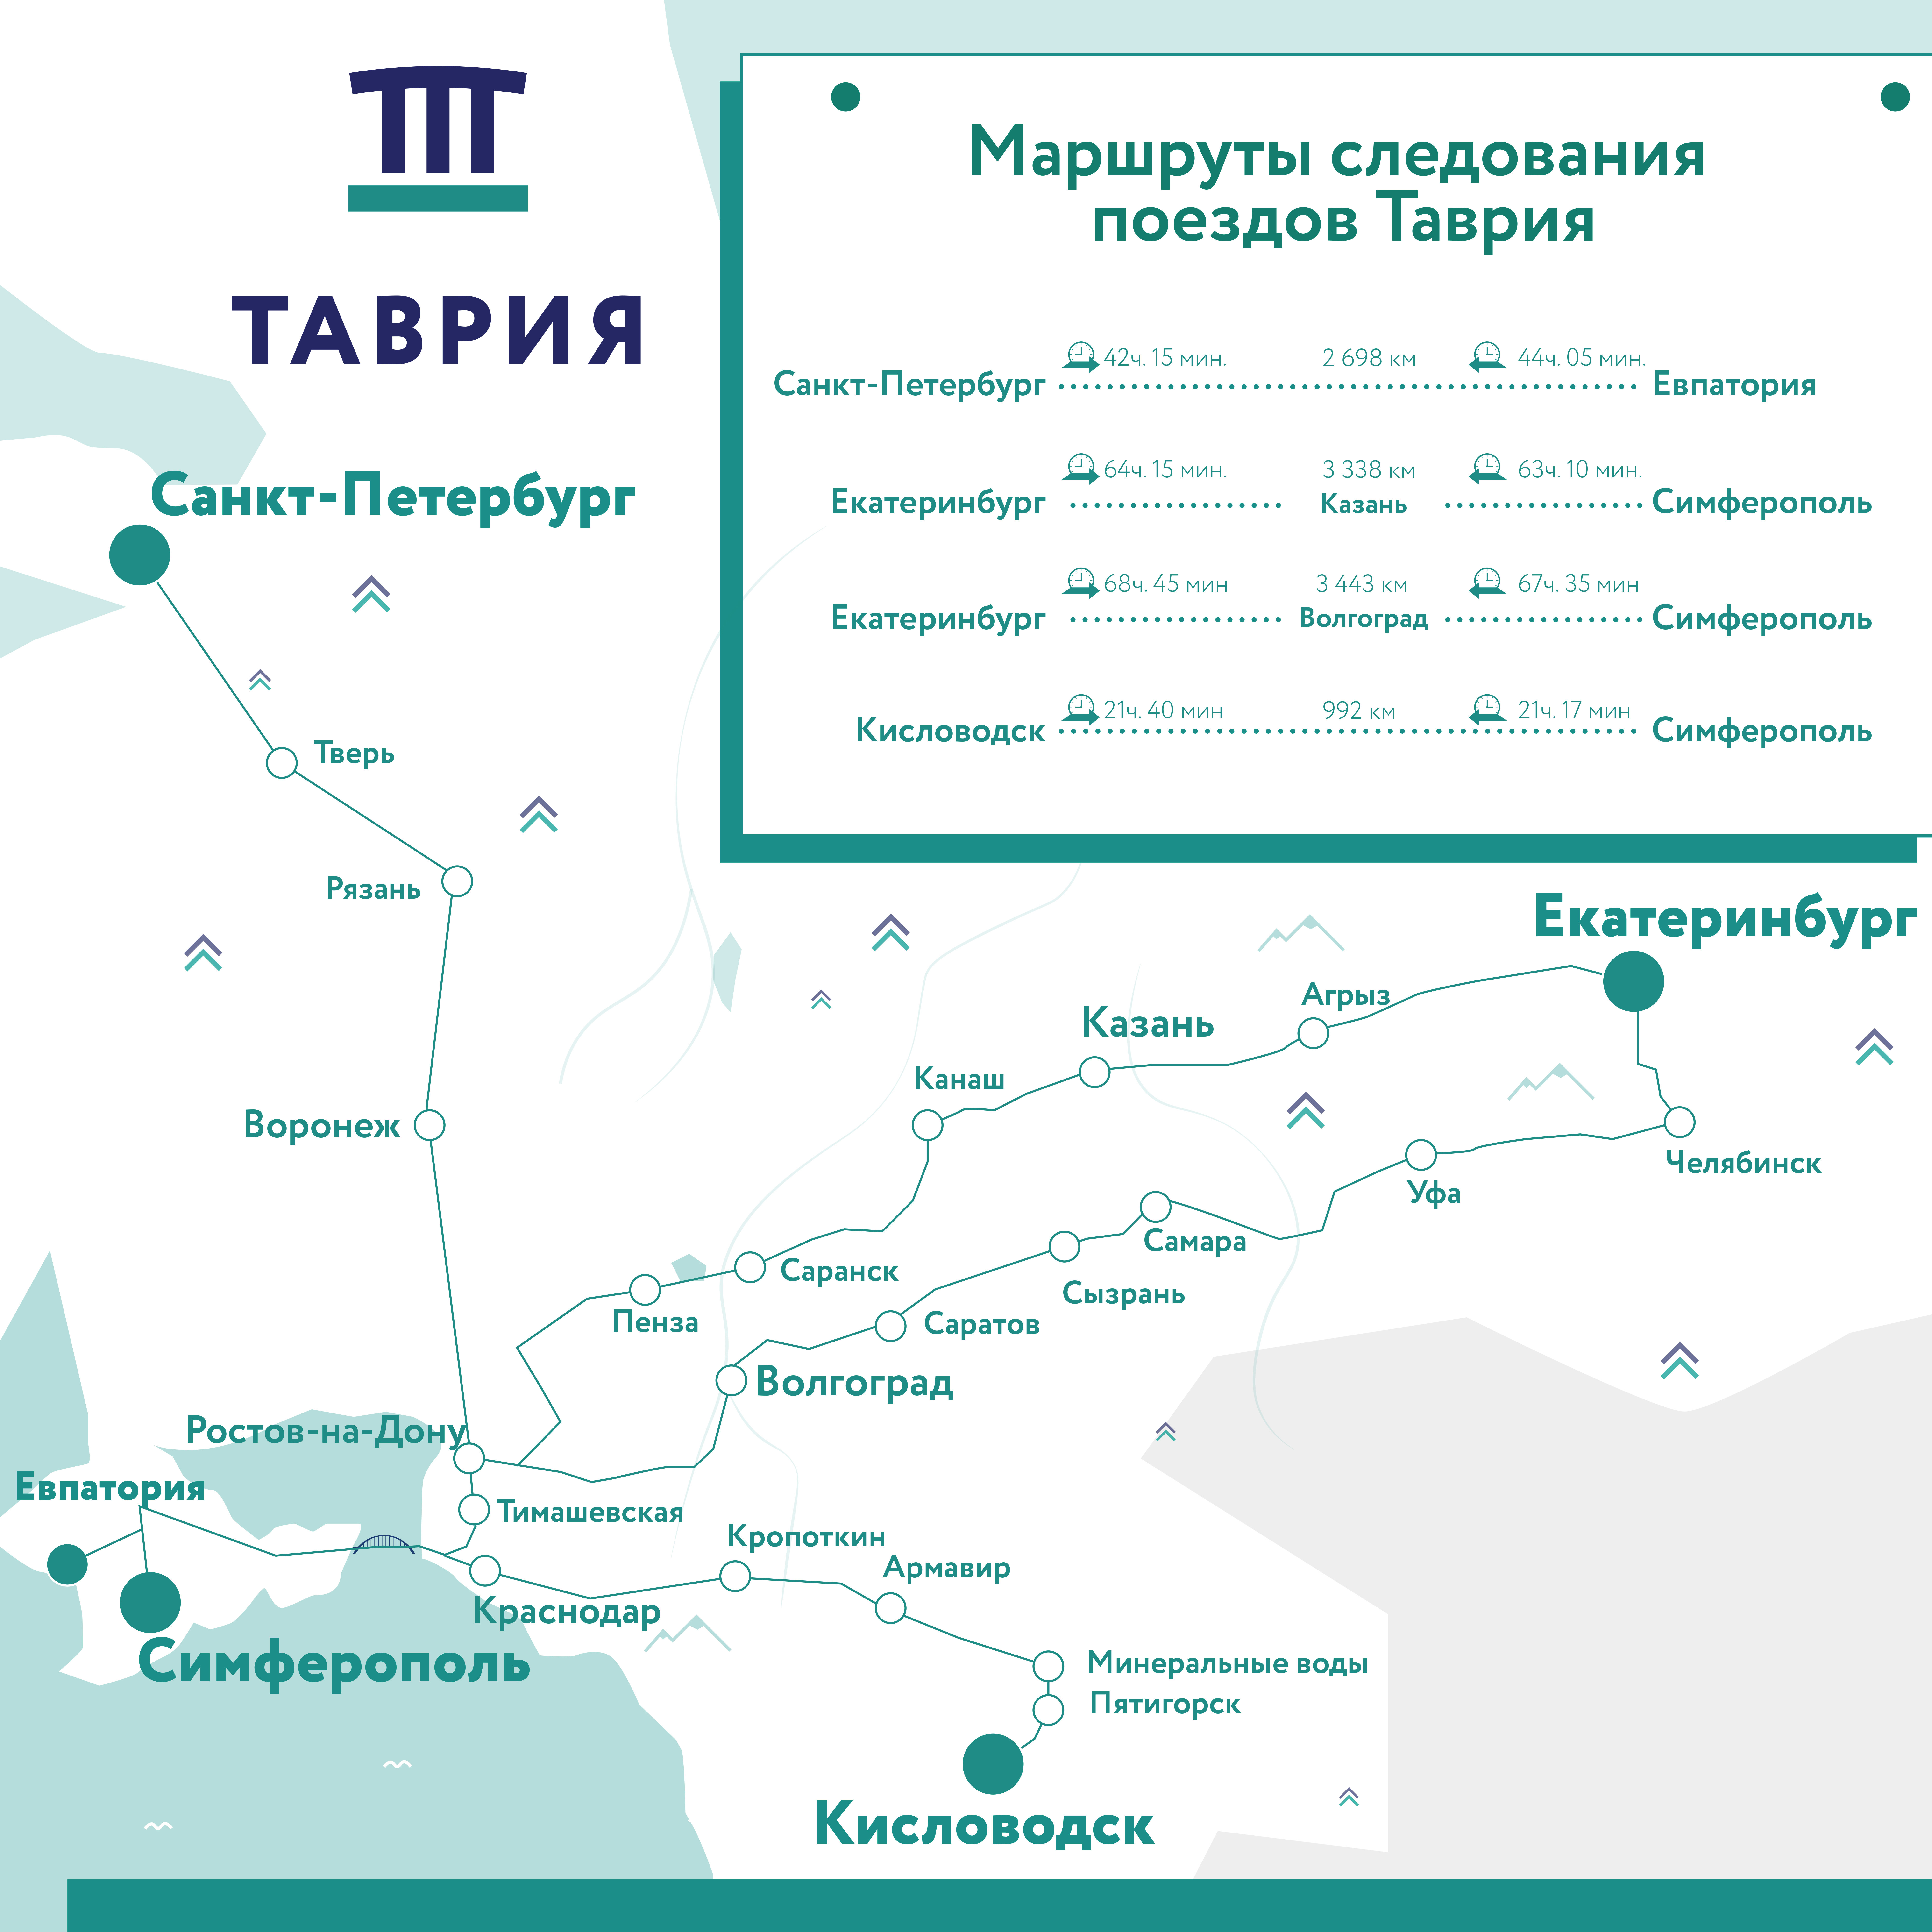 Маршруты следования поездов «Таврия» в Крым из Екатеринбурга, Санкт-Петербурга и Кисловодска